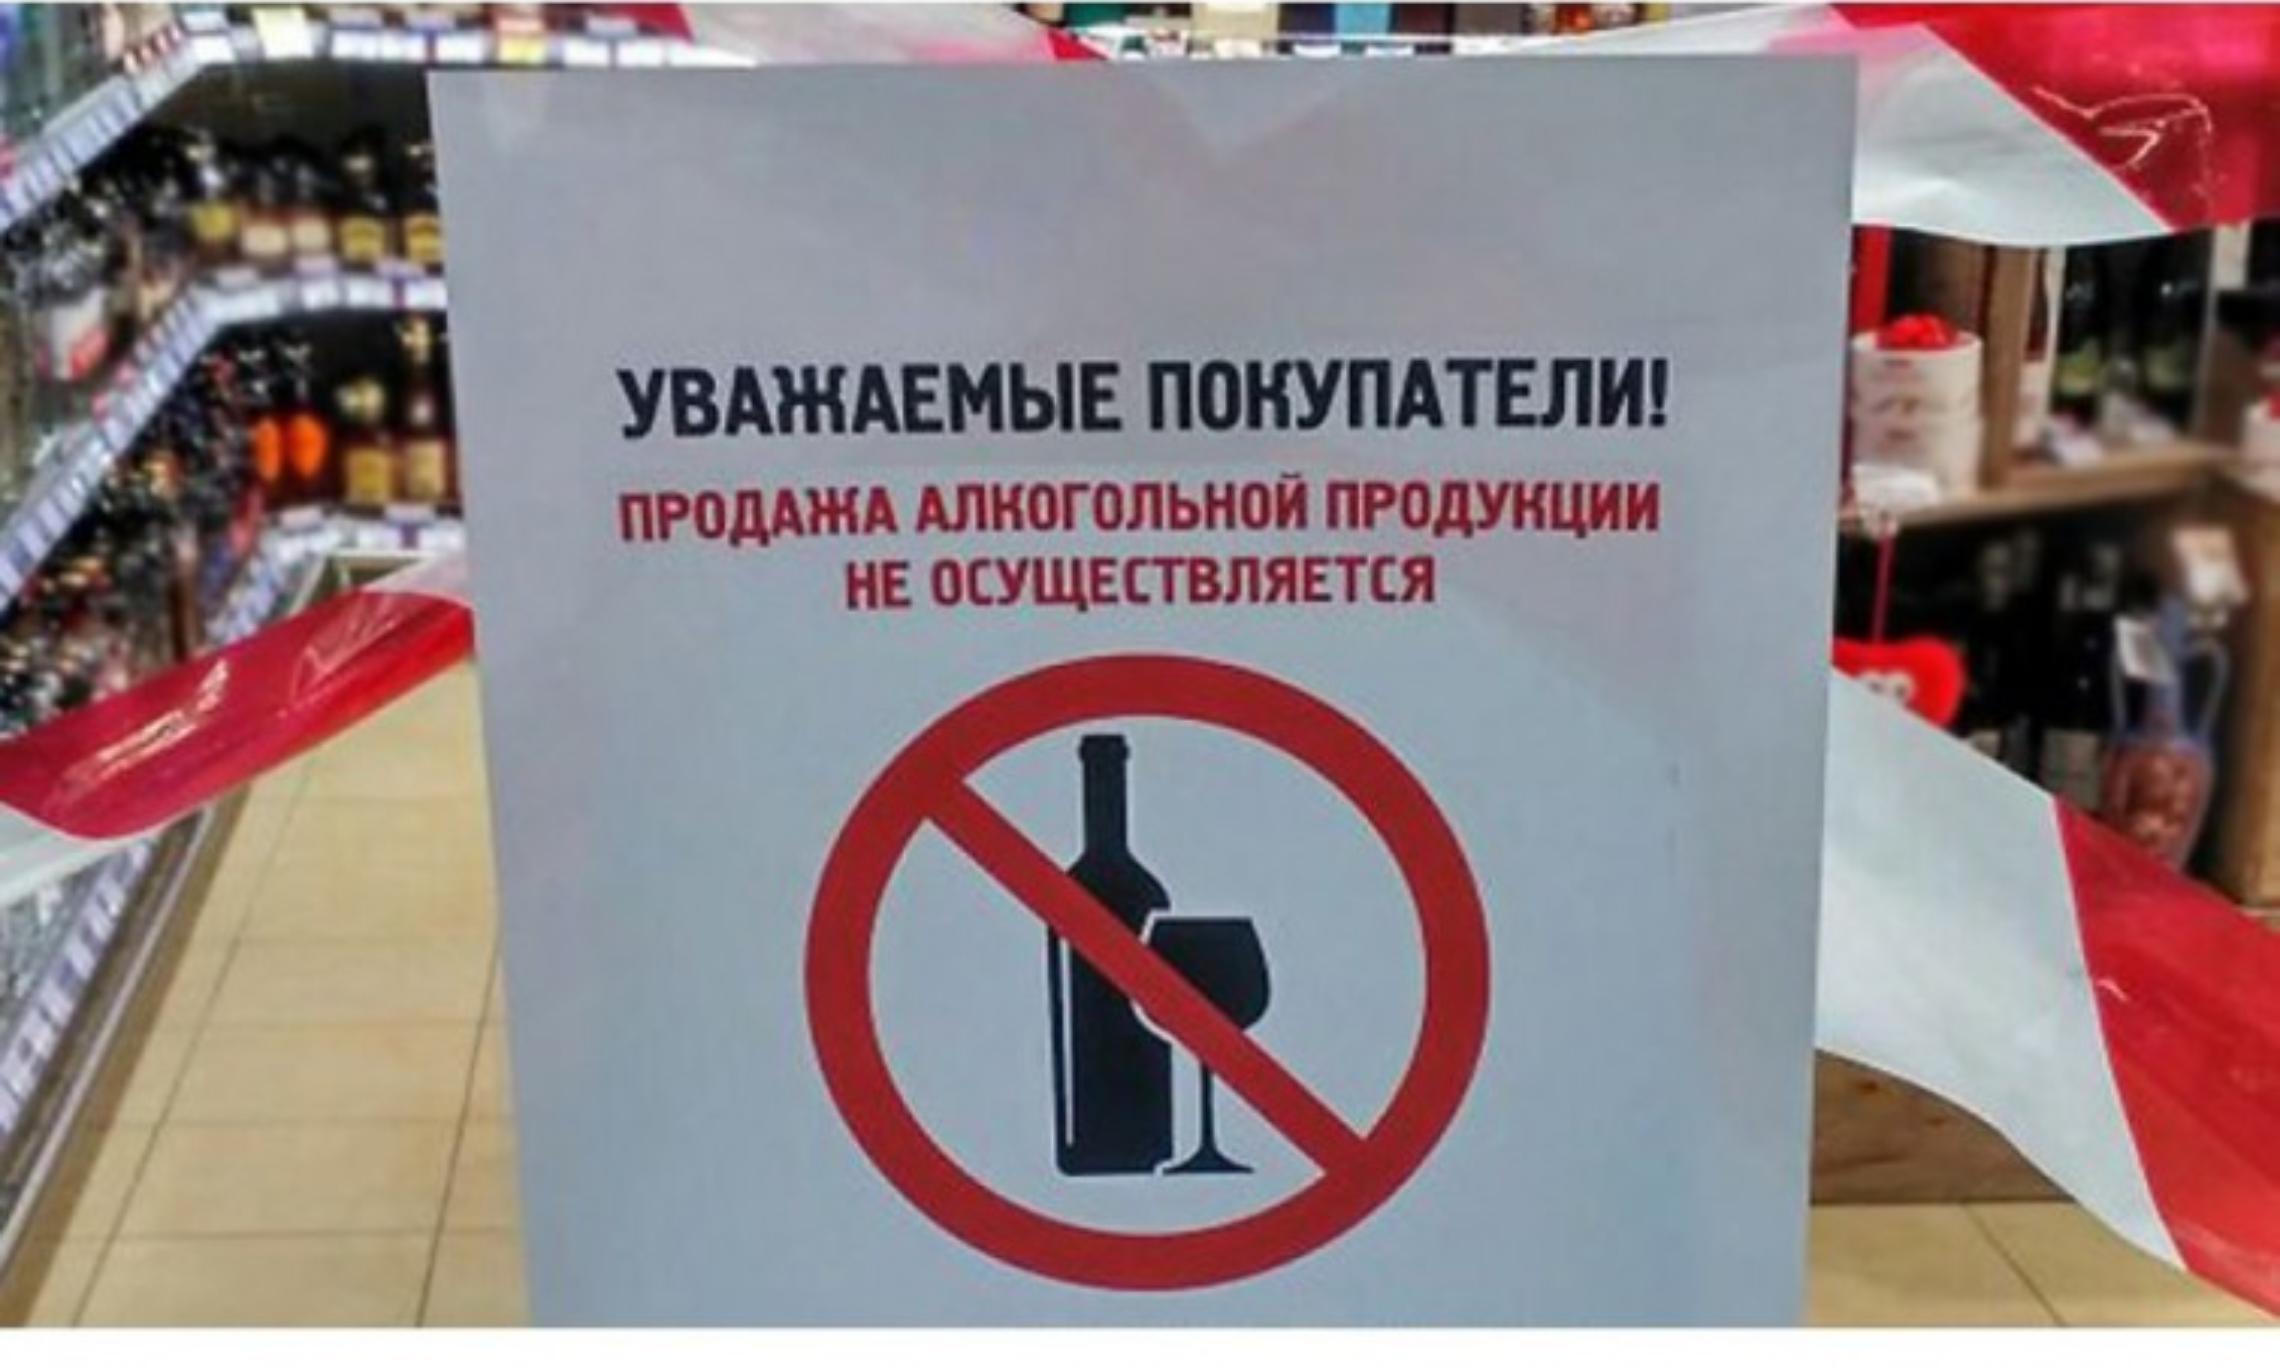 Реализация запрещена ограничена. Алкоголь не продается. Запрет алкогольной продукции. Продажа алкогольной продукции запрещена.